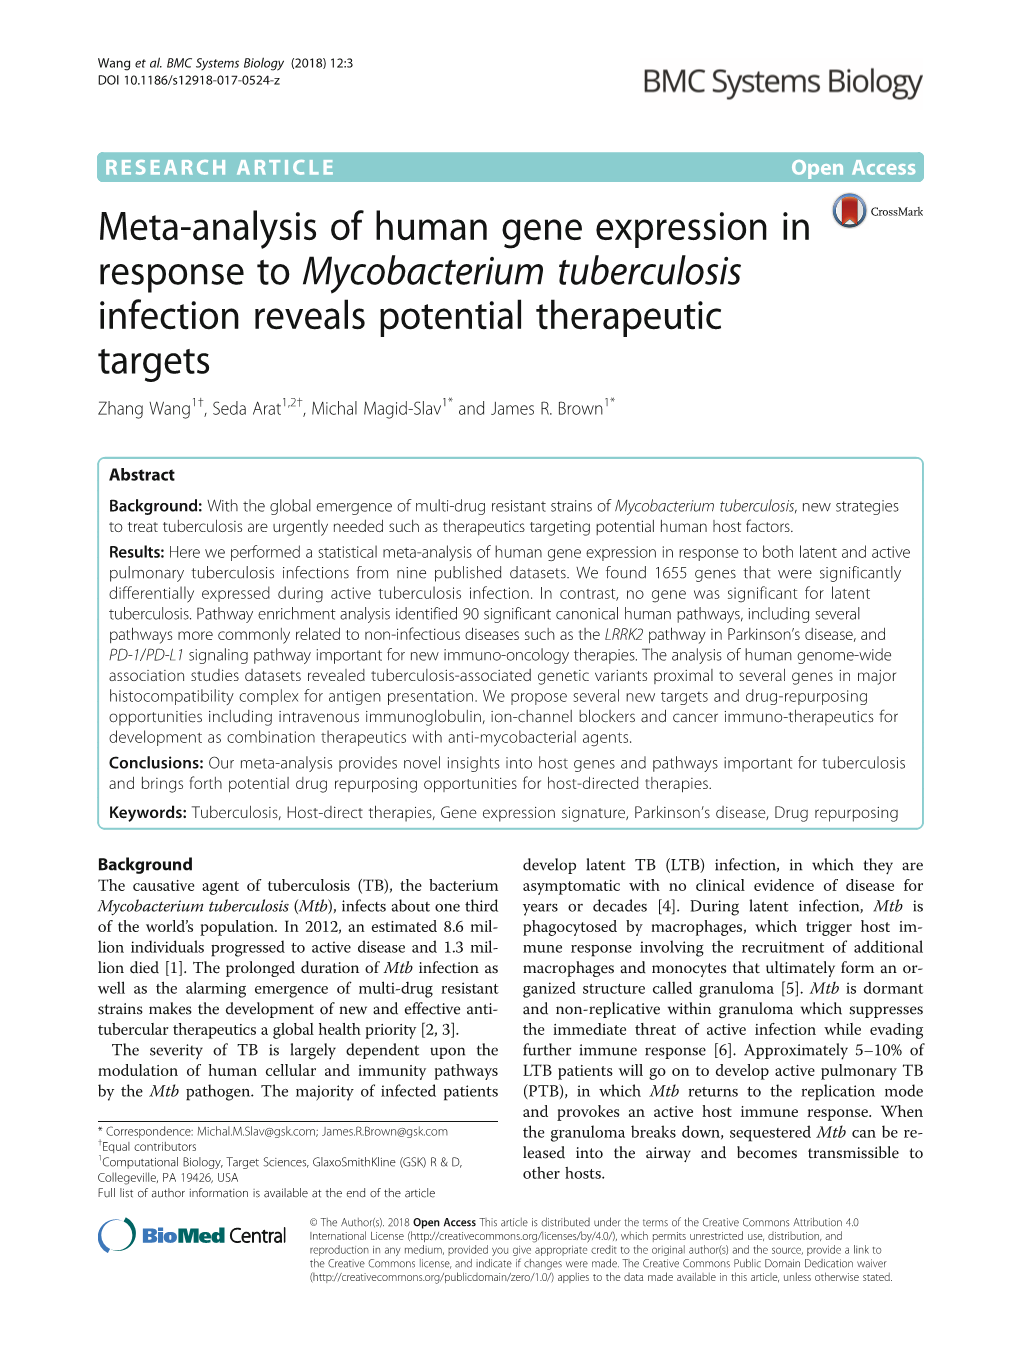 Meta-Analysis of Human Gene Expression in Response To